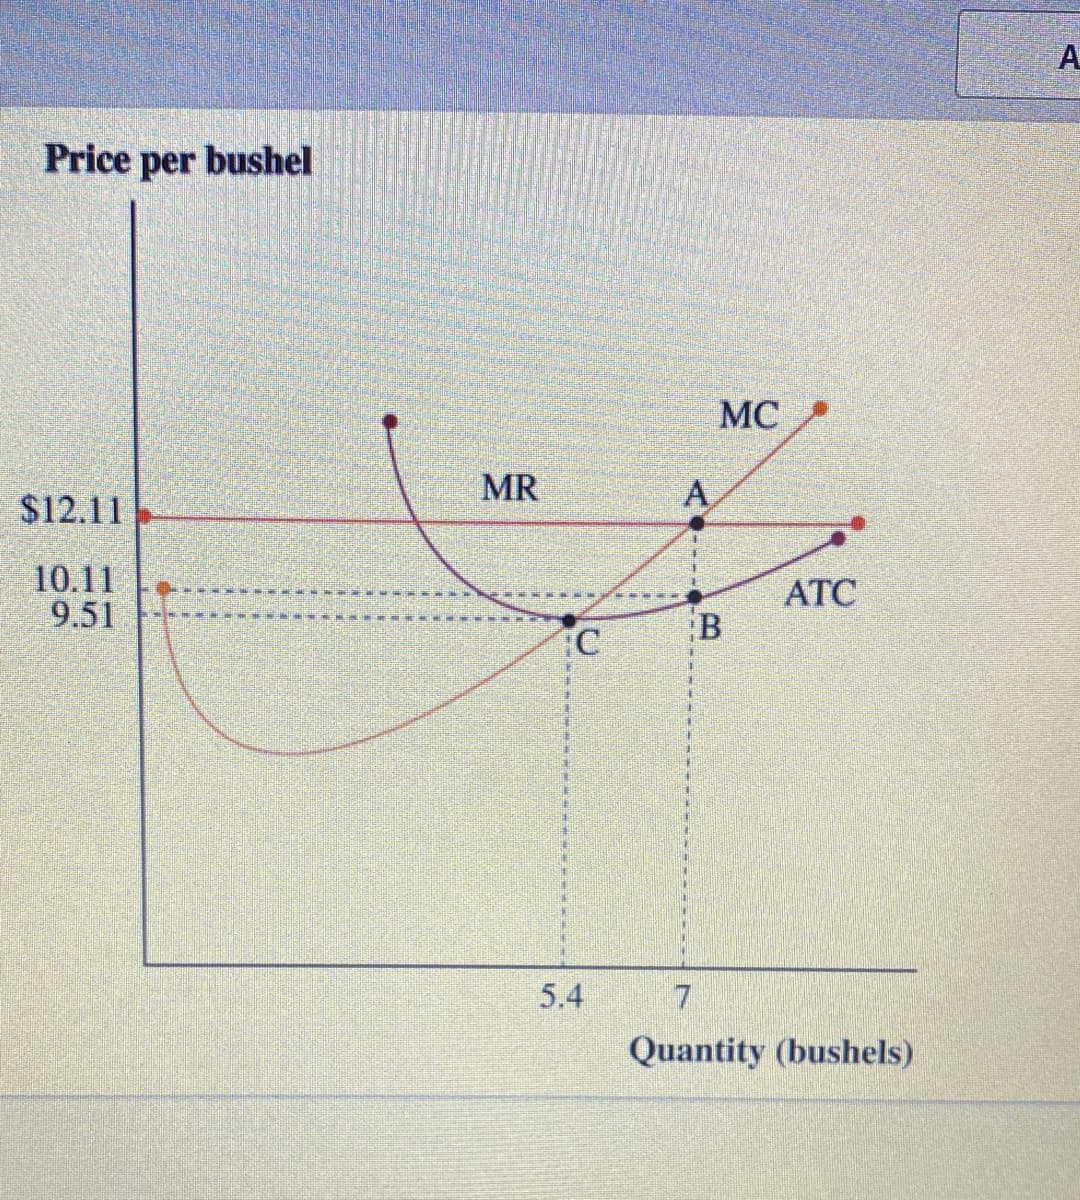 A.
Price per bushel
MC
MR
A
$12.11
10.11
9.51
ATC
主
5.4
7
Quantity (bushels)
B.
